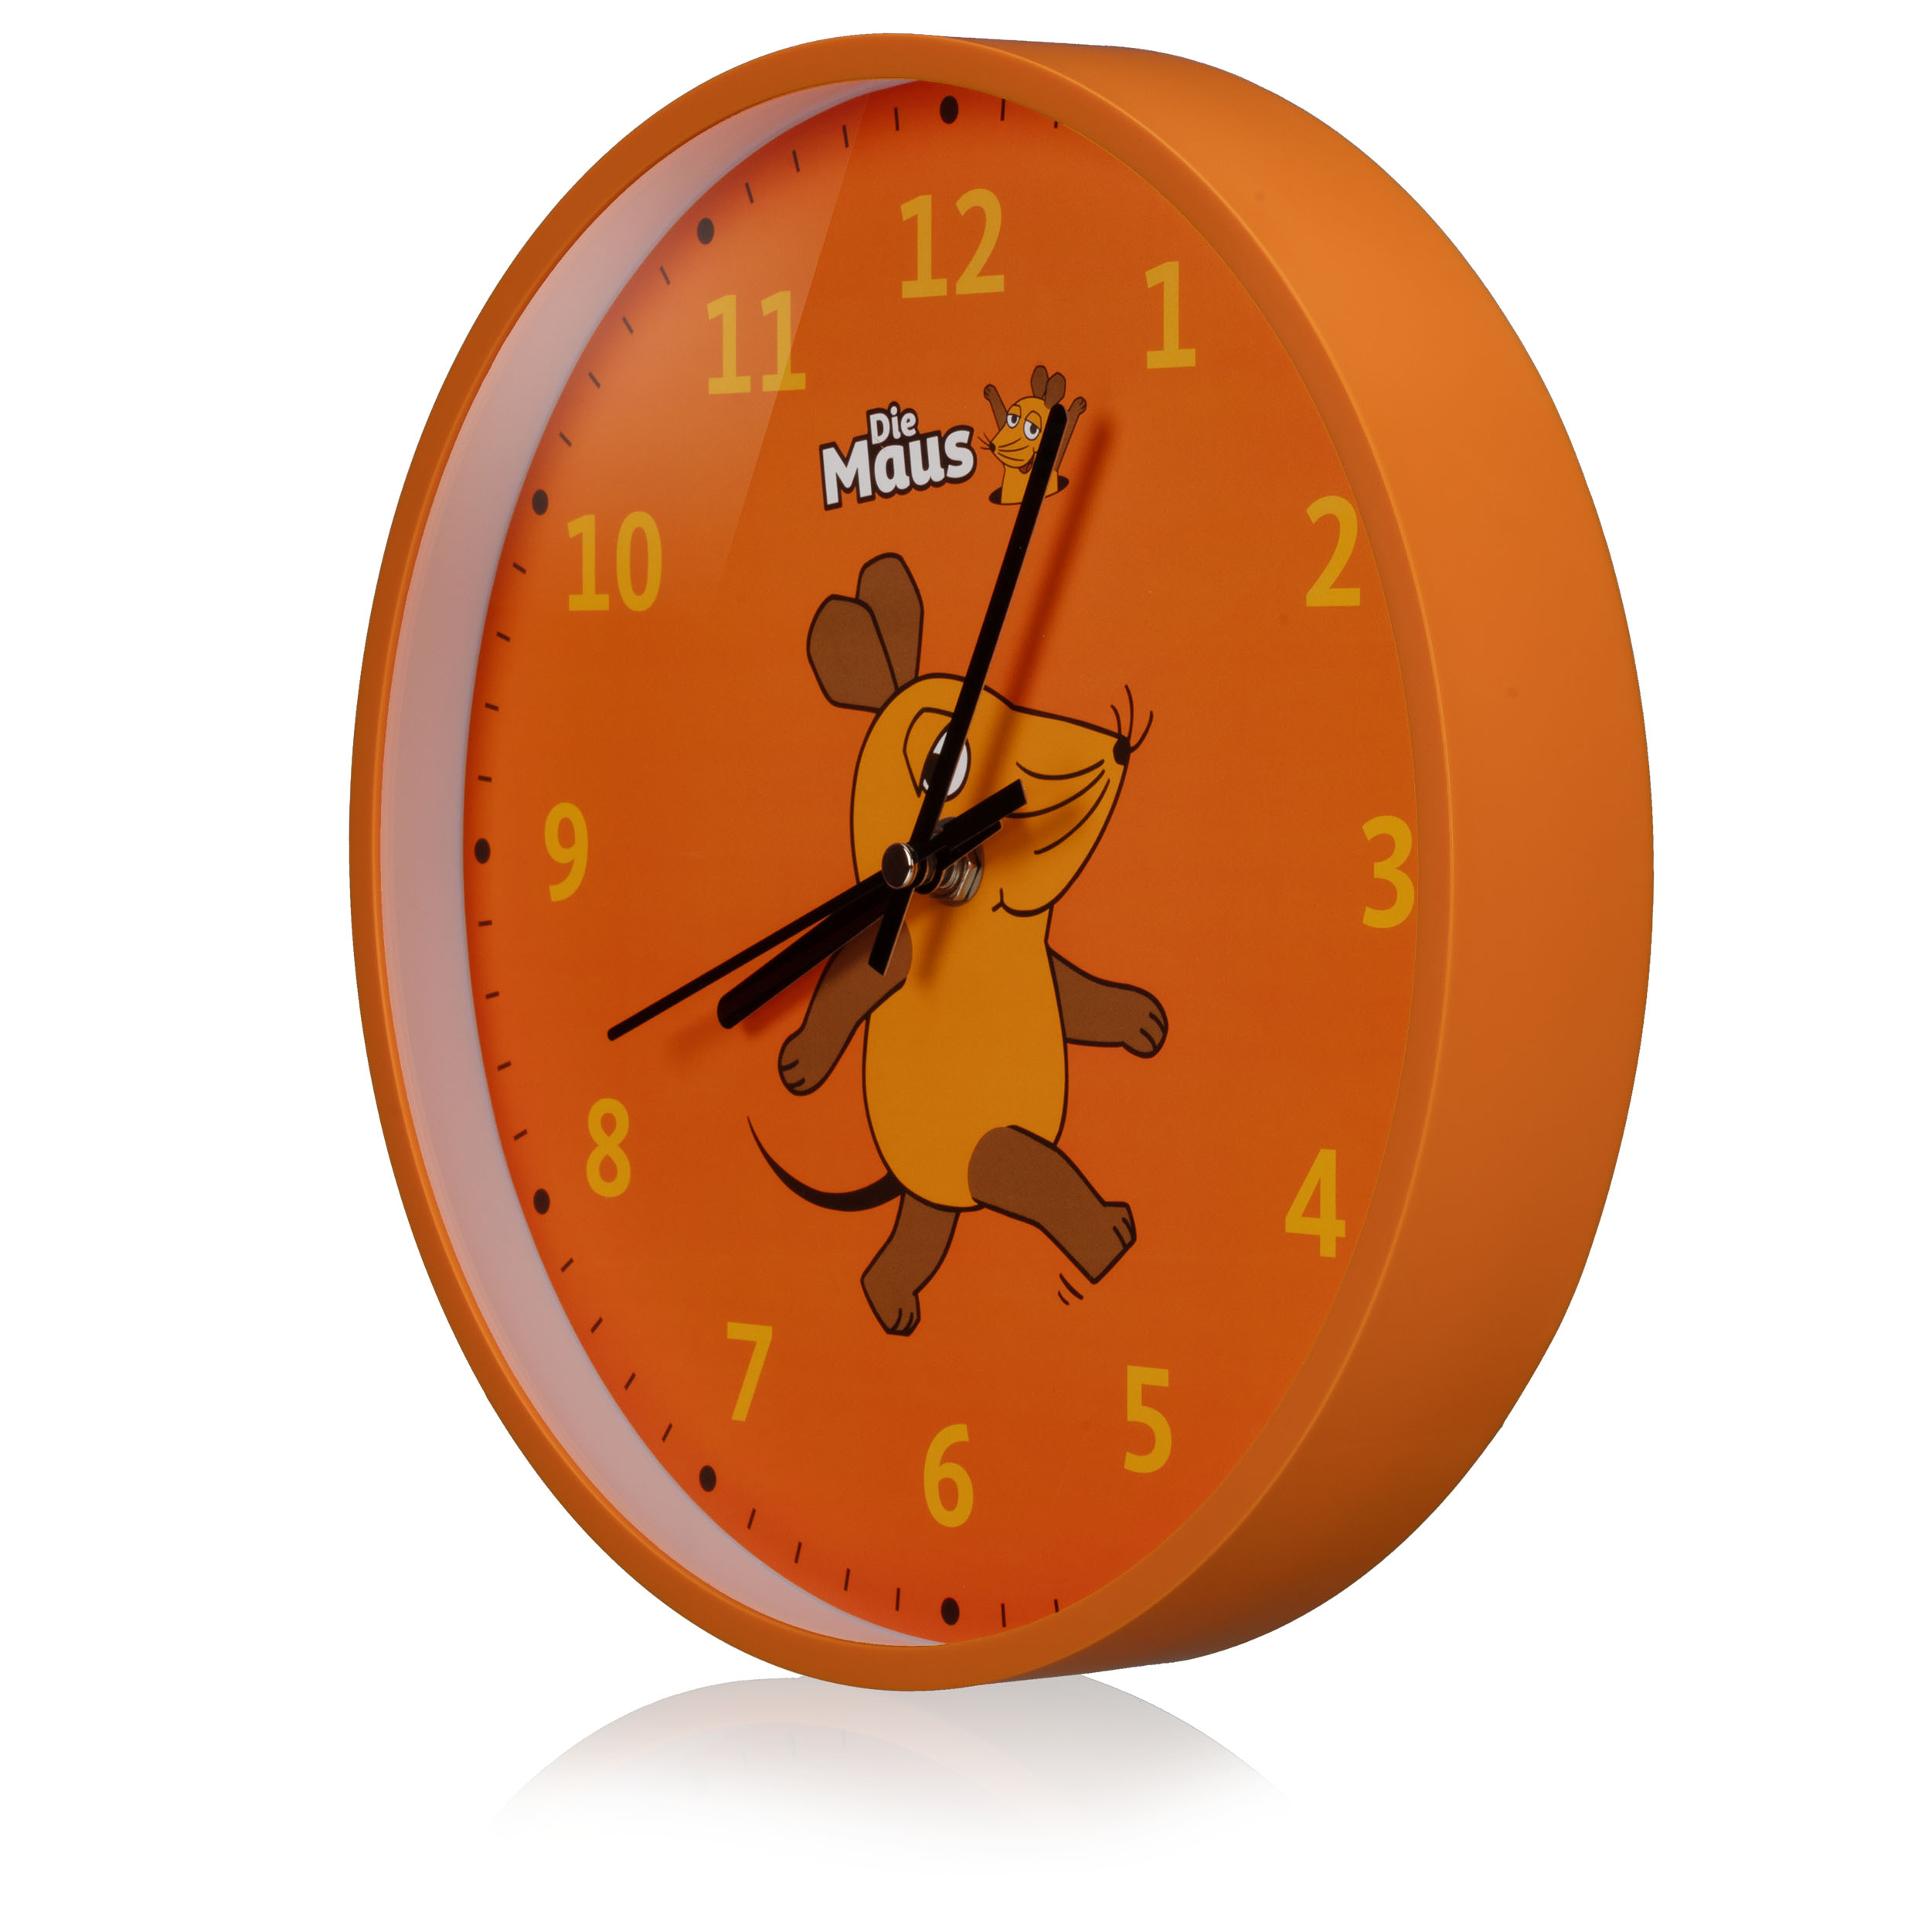 DieMaus Children's Wall Clock